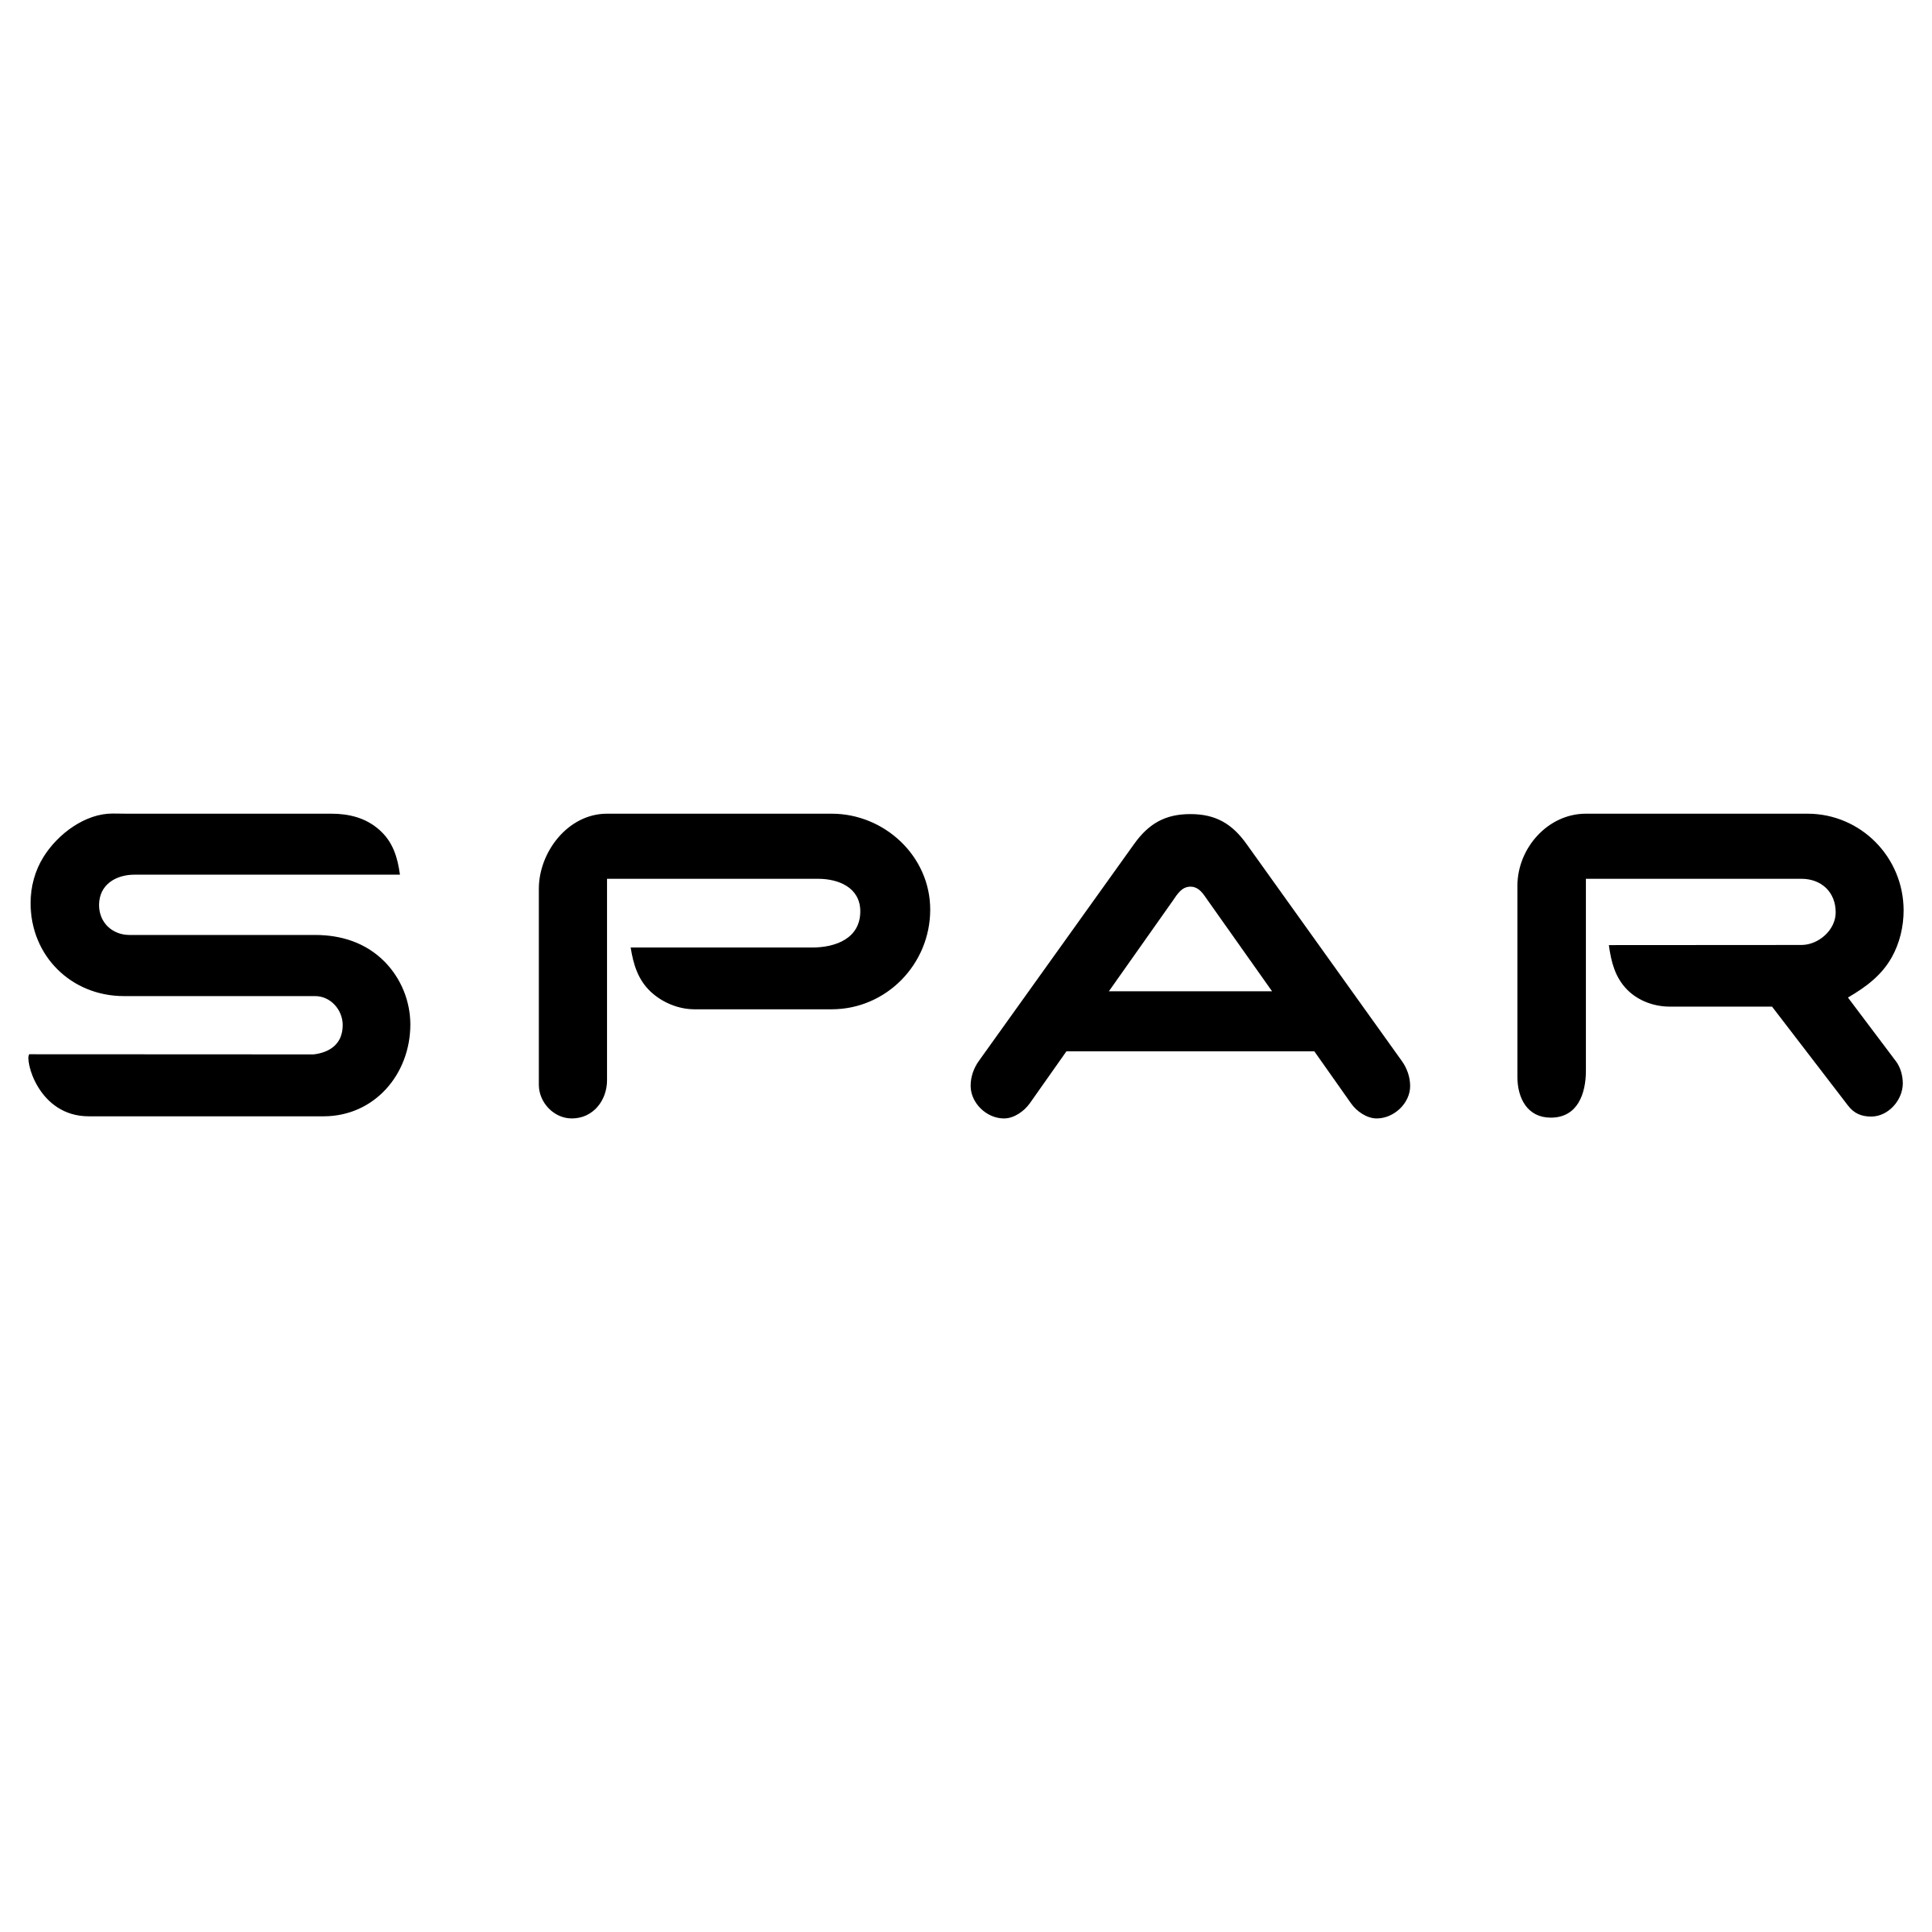 SPAR Logo - Spar Logo PNG Transparent & SVG Vector - Freebie Supply